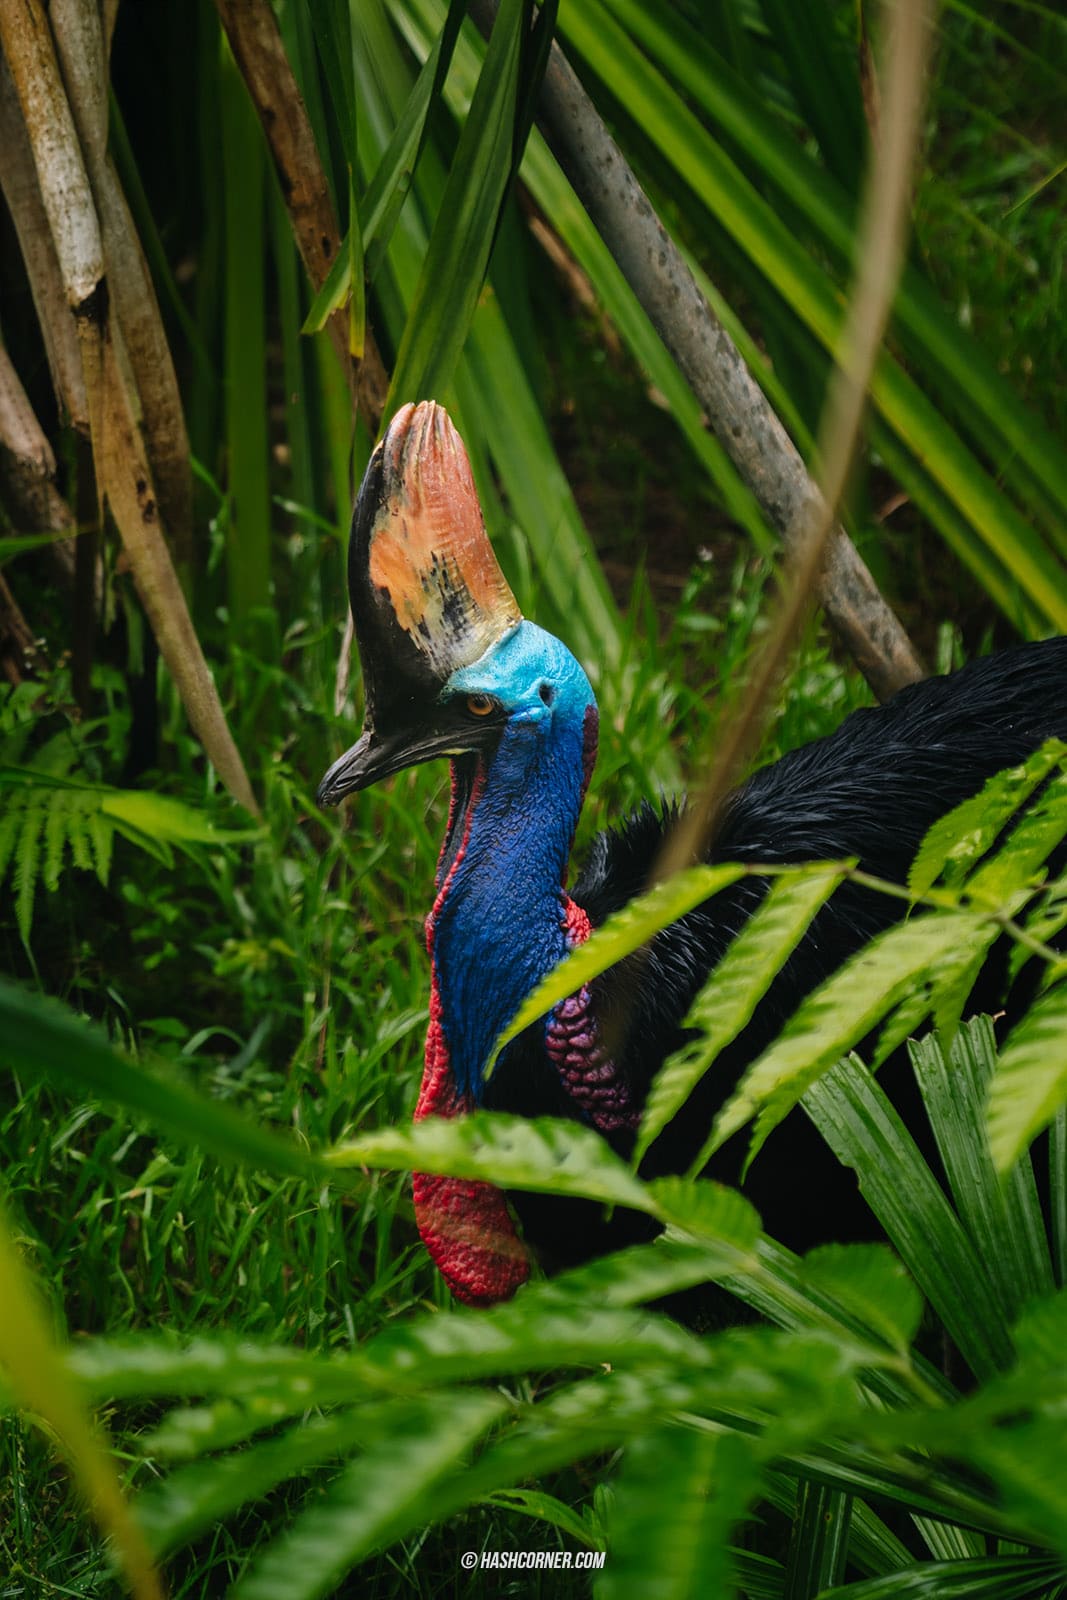 รีวิว Bird Paradise x สิงคโปร์ เที่ยวสวนนกใหญ่ที่สุดในเอเชีย